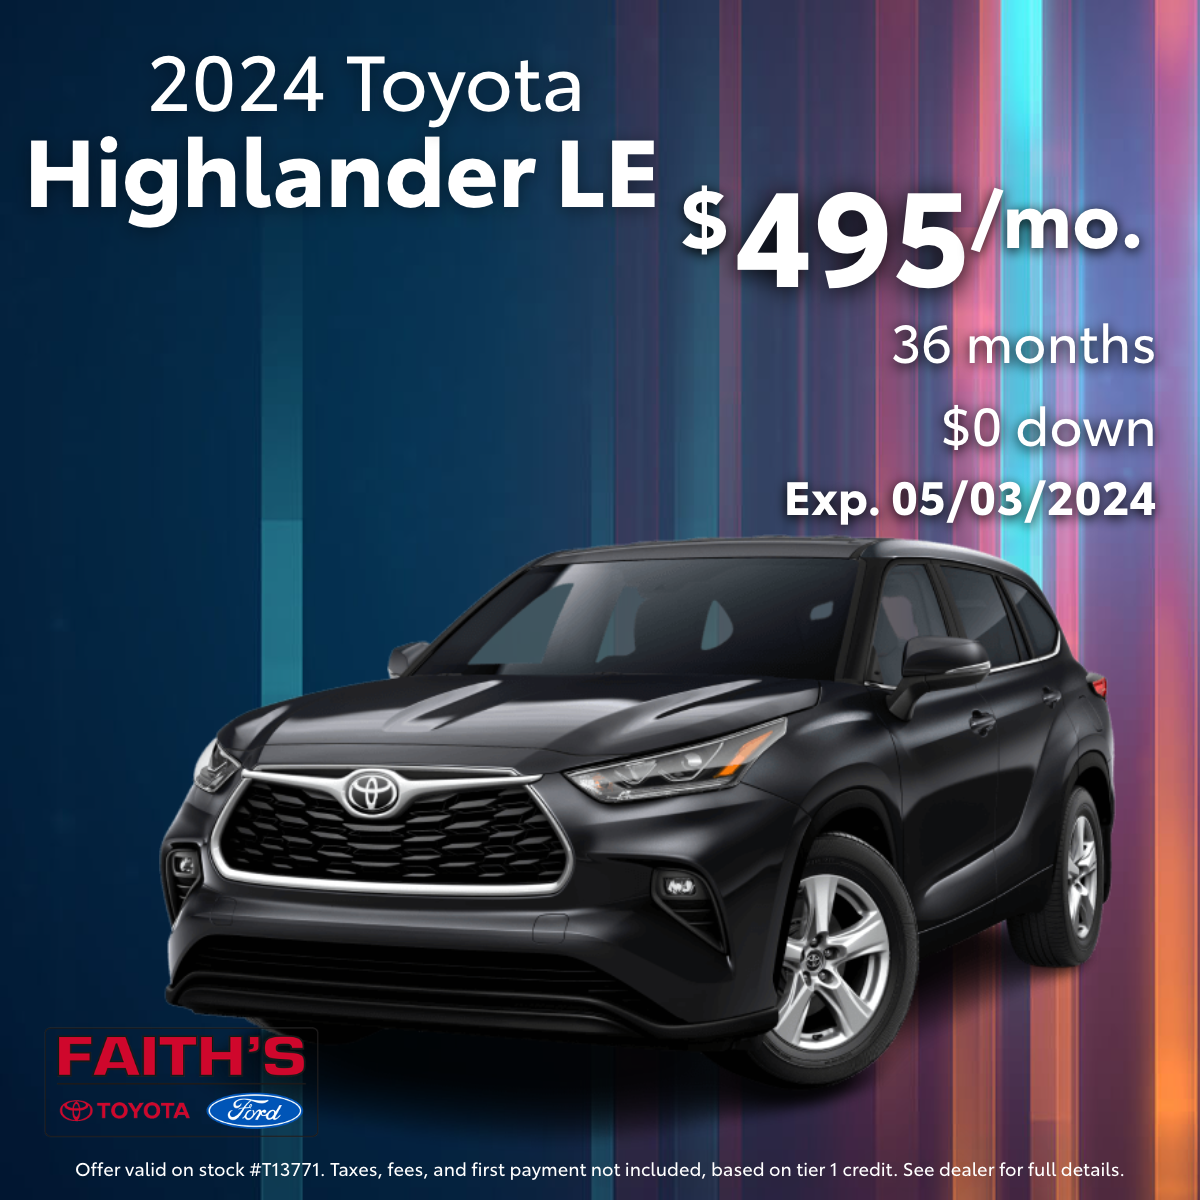 2024 Toyota Highlander Lease Offer | Faiths Auto Group